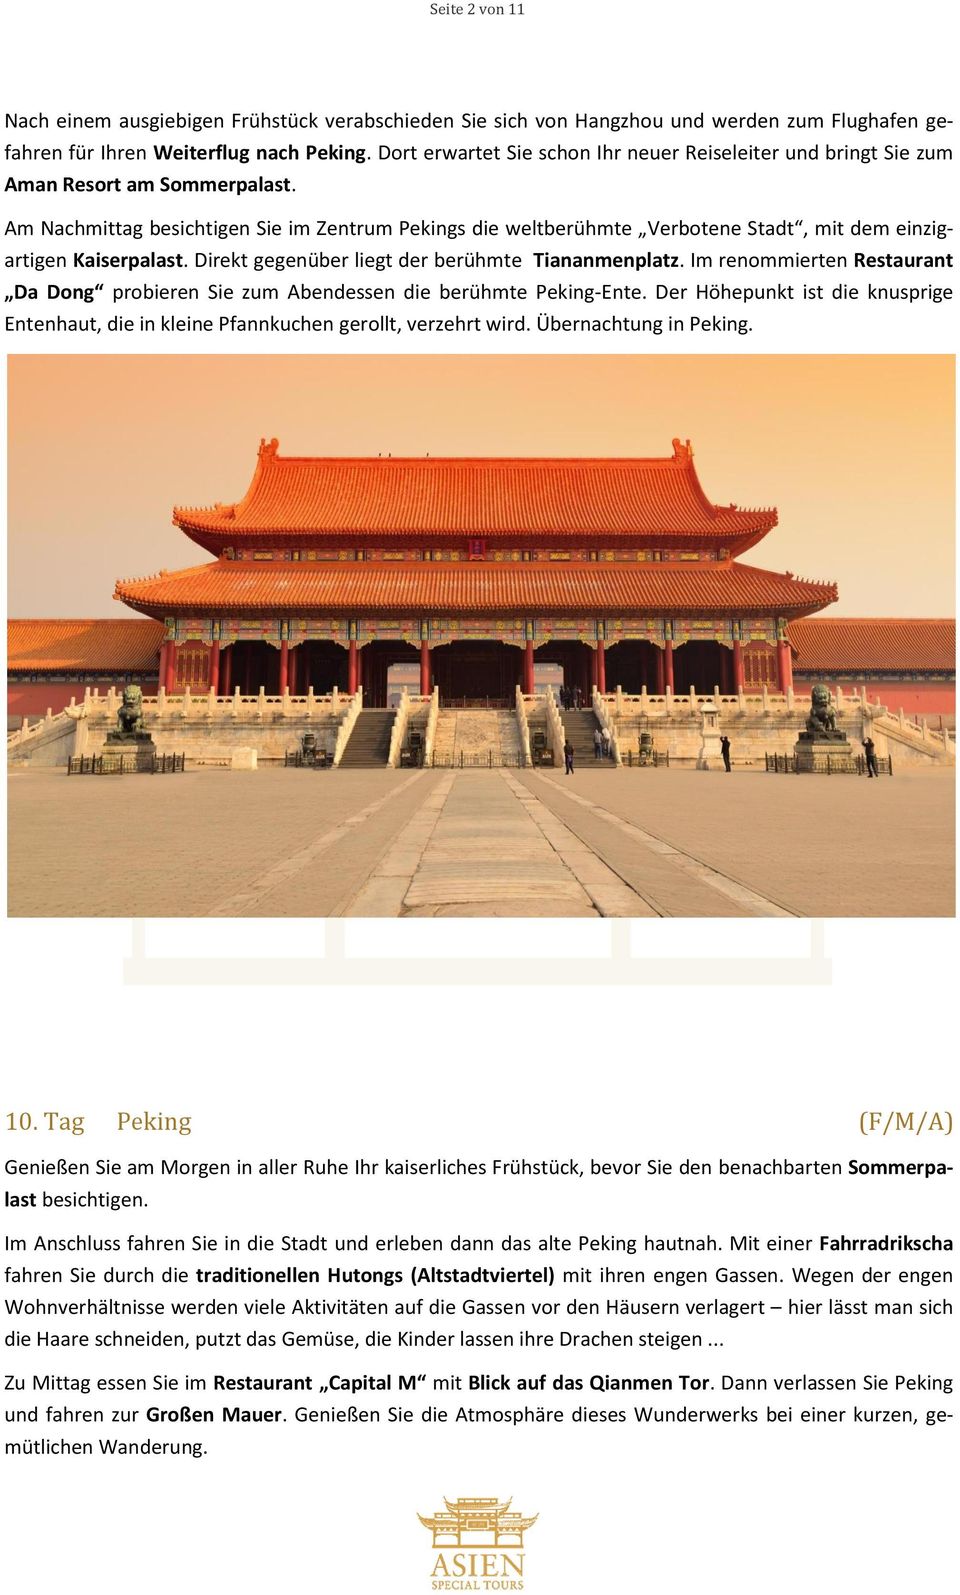 Am Nachmittag besichtigen Sie im Zentrum Pekings die weltberühmte Verbotene Stadt, mit dem einzigartigen Kaiserpalast. Direkt gegenüber liegt der berühmte Tiananmenplatz.